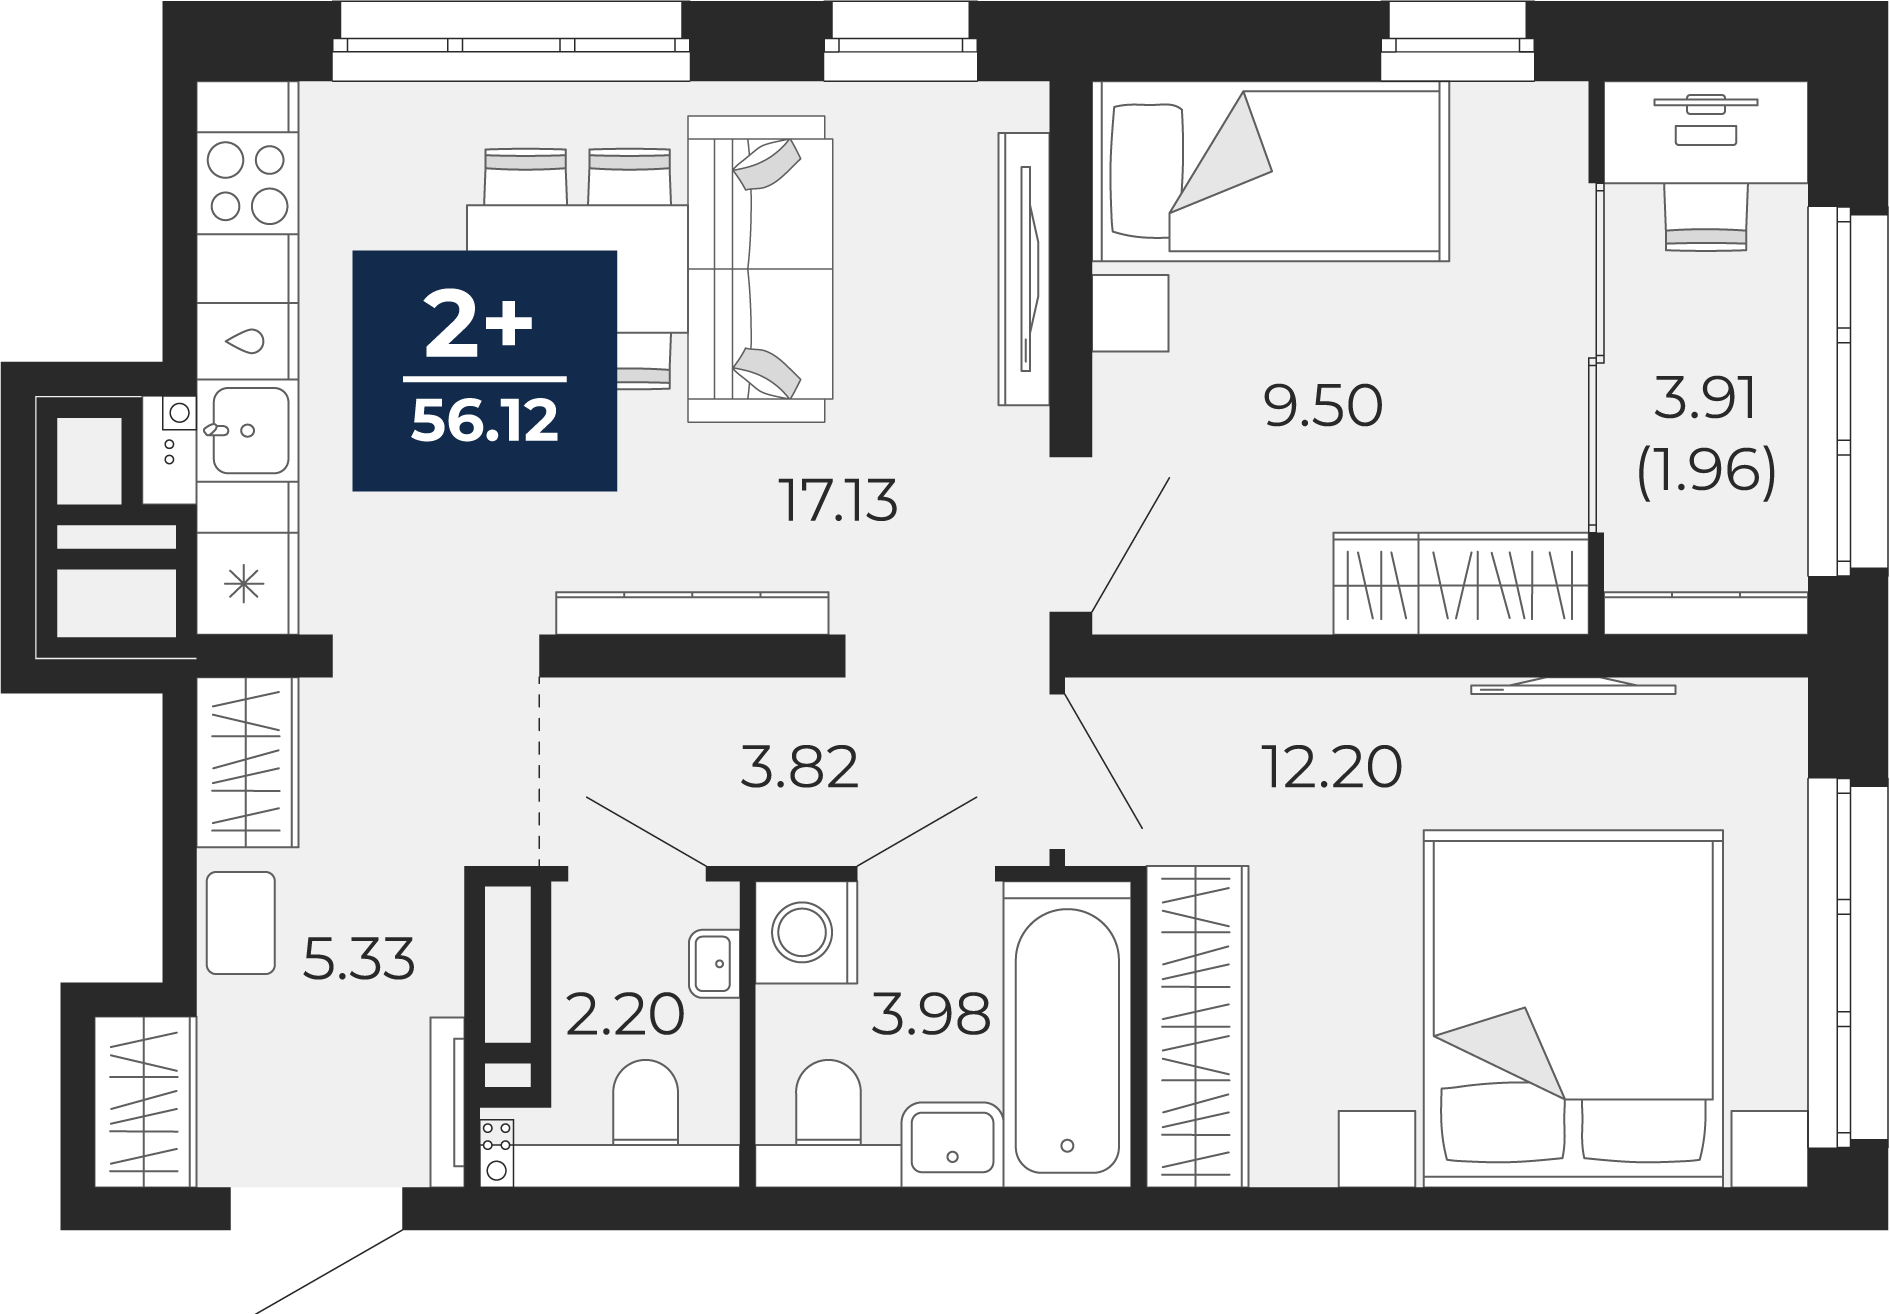 Квартира № 175, 2-комнатная, 56.12 кв. м, 17 этаж